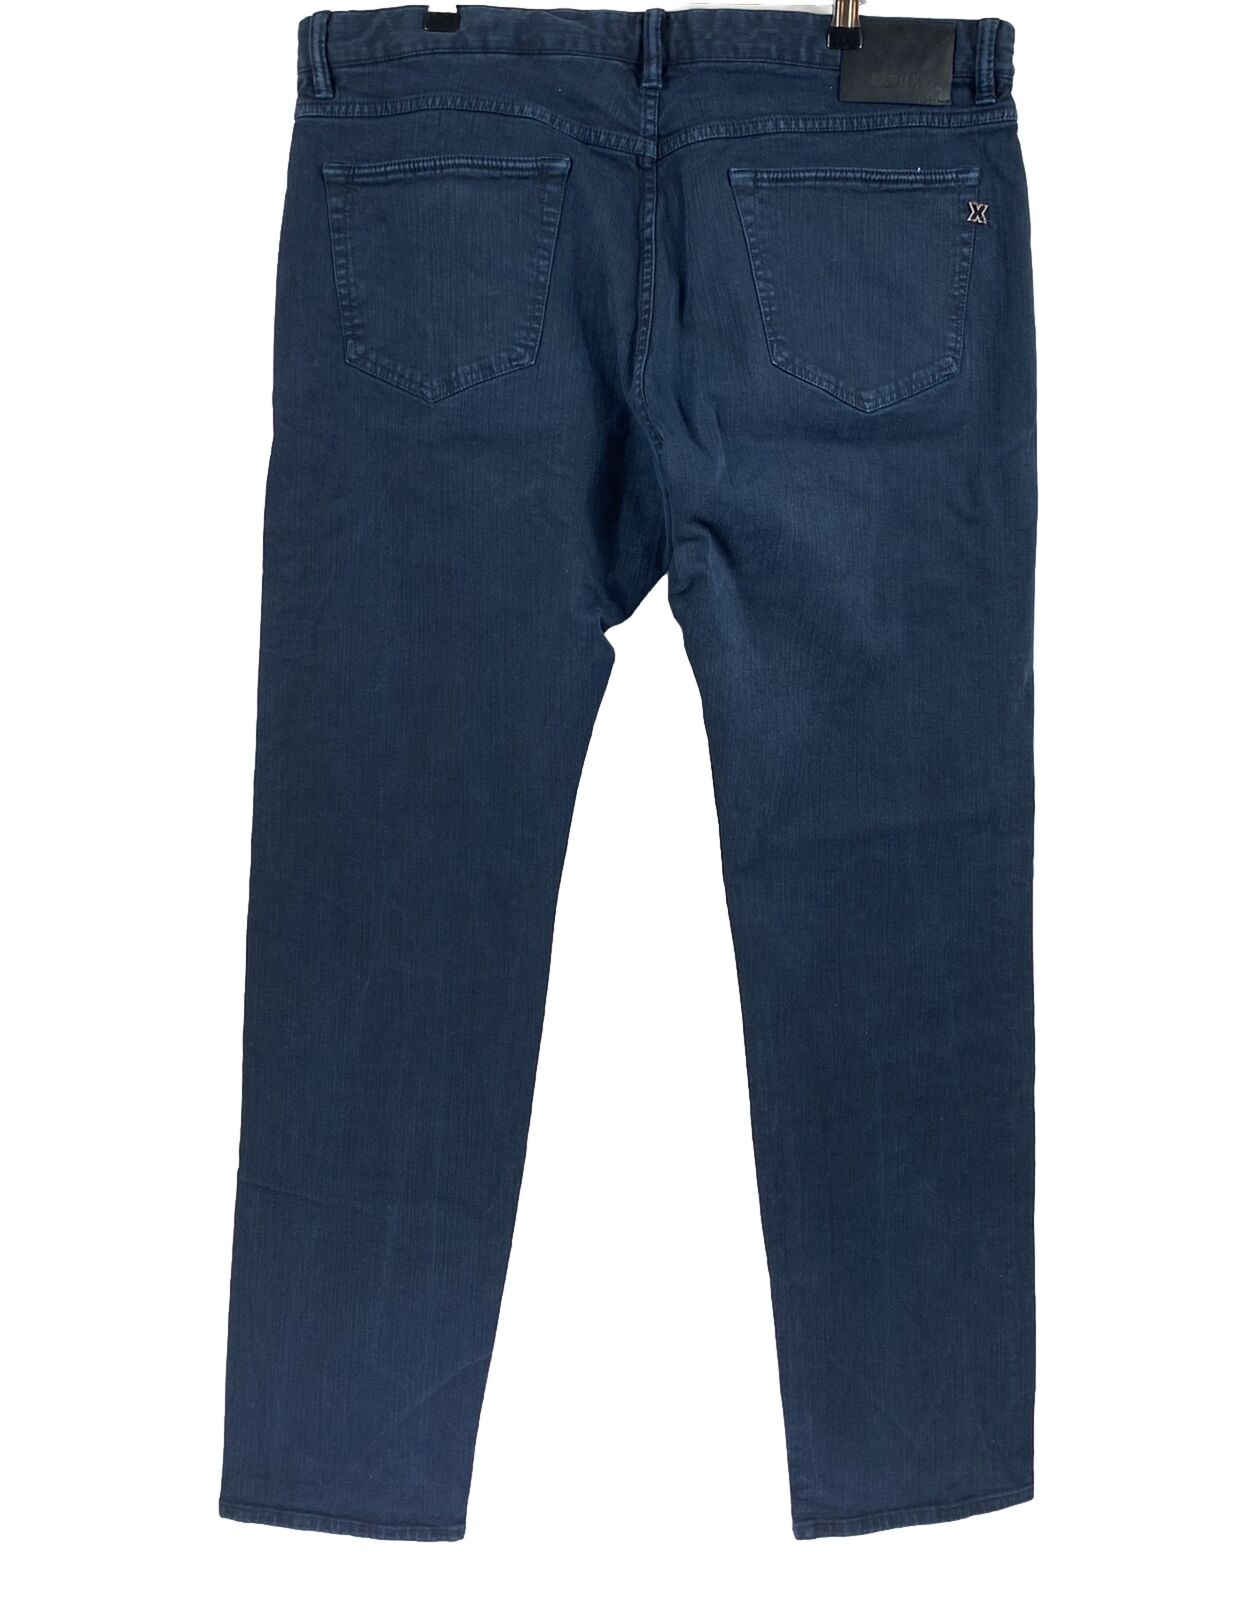 Incotex Jeans Men's Size W40 L33 Blue Slim Fit St… - image 4